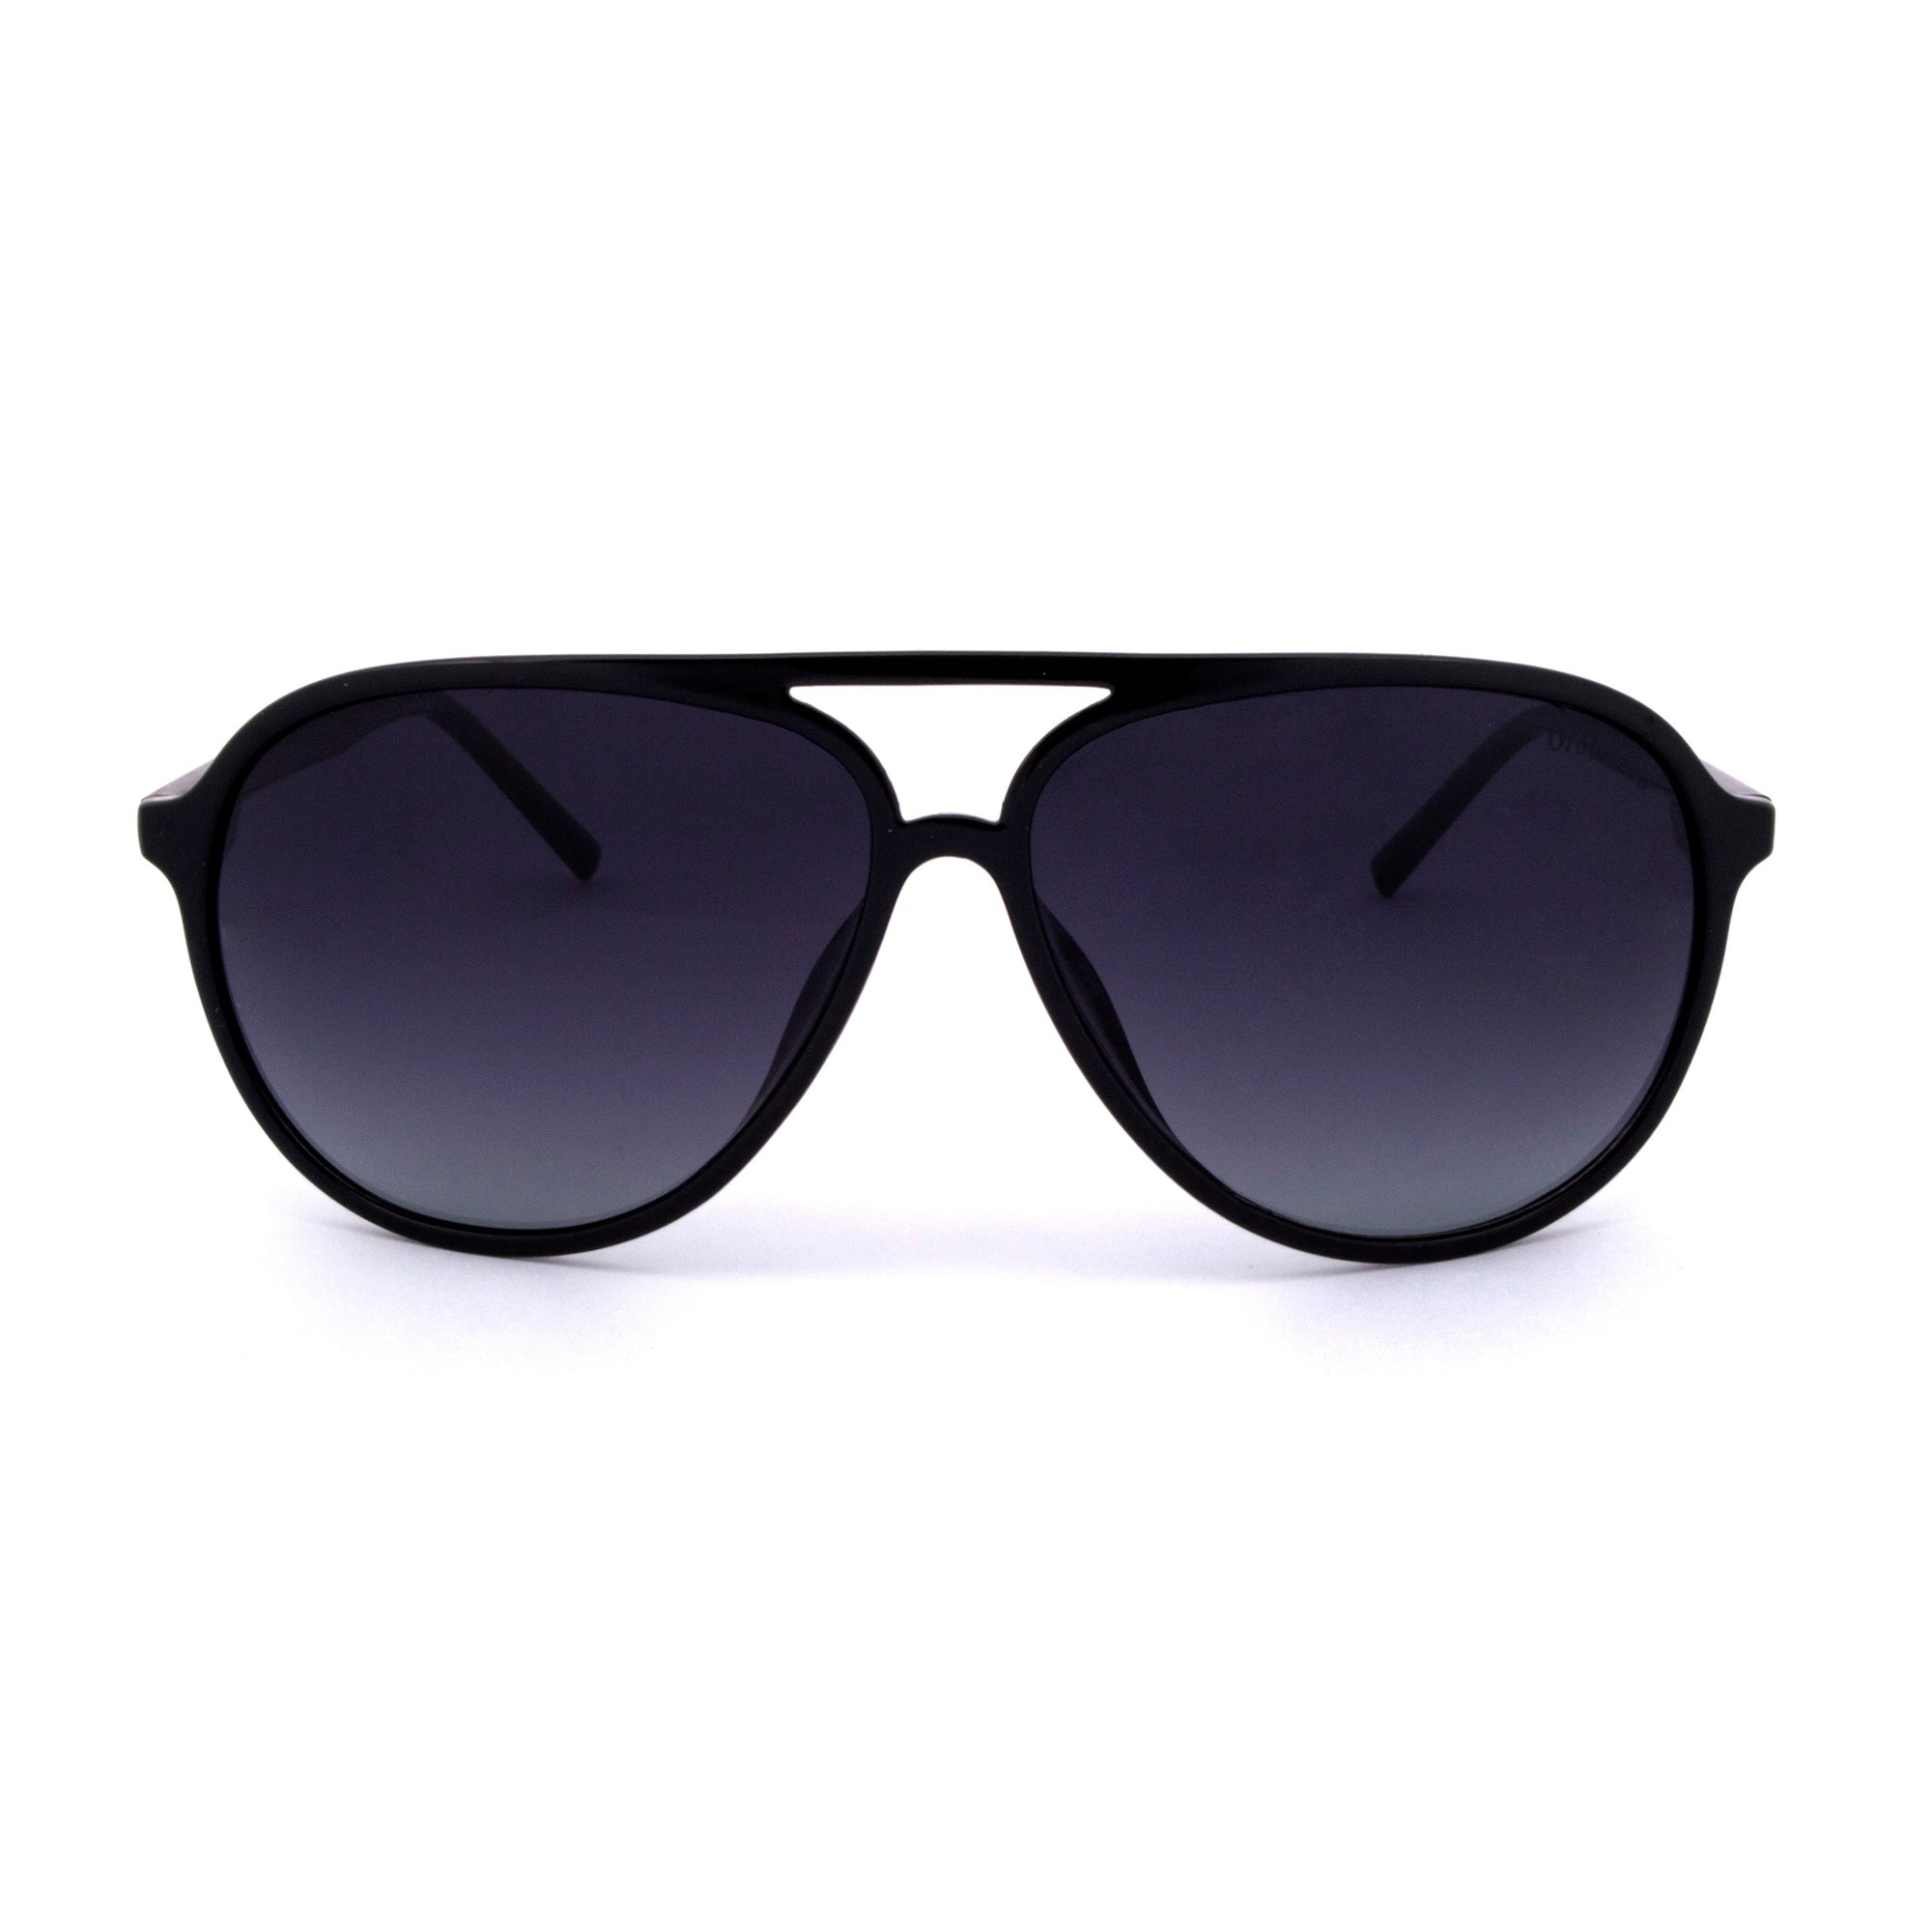 Orobianco Sunglasses-Sunglasses-Orobianco-Glossy Black-Cufflinks.com.sg